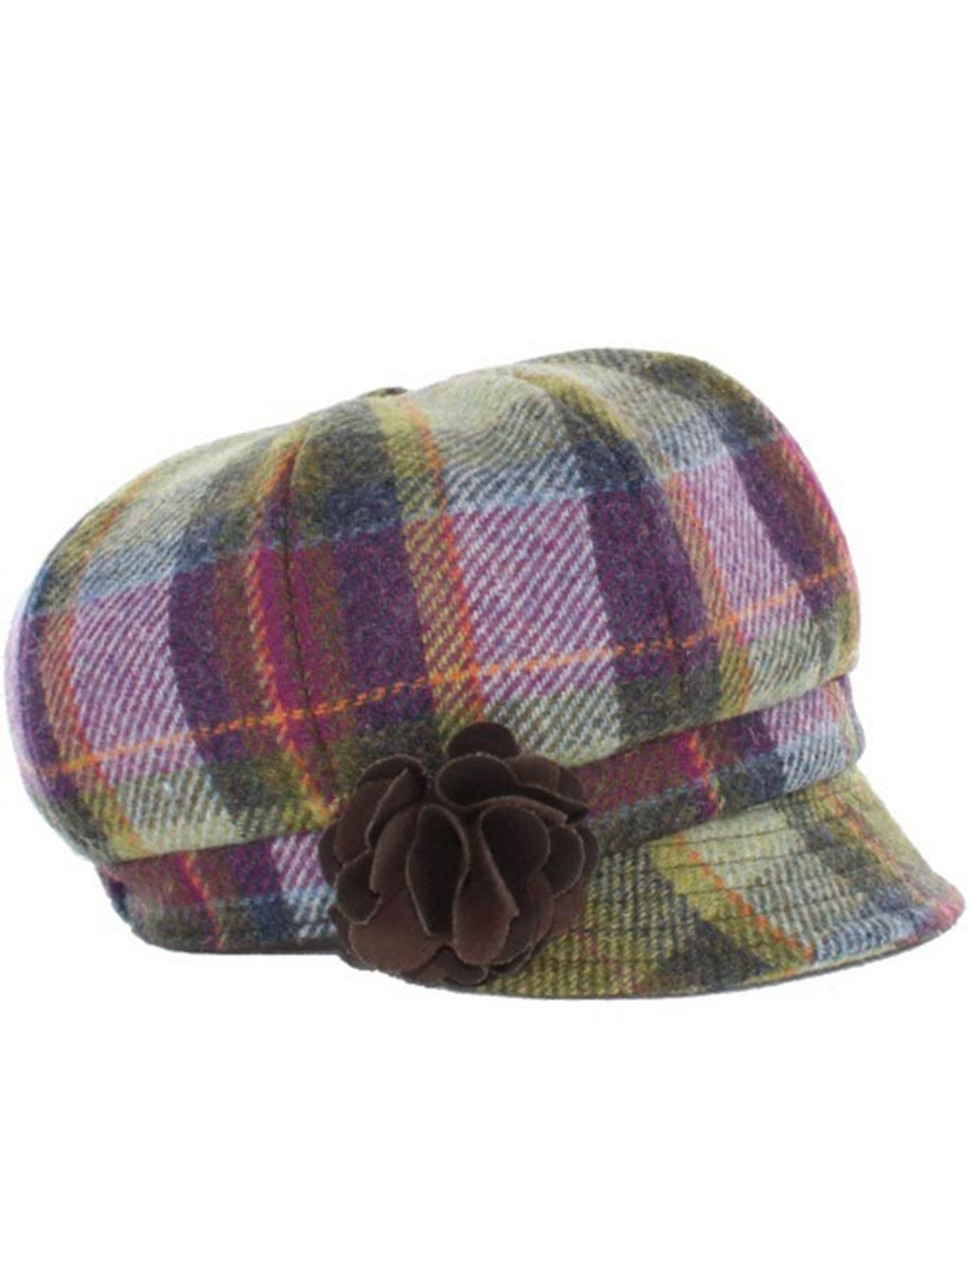 Ladies Tweed Newsboy Hat - Multi Vernal Plaid | Mucros Weavers